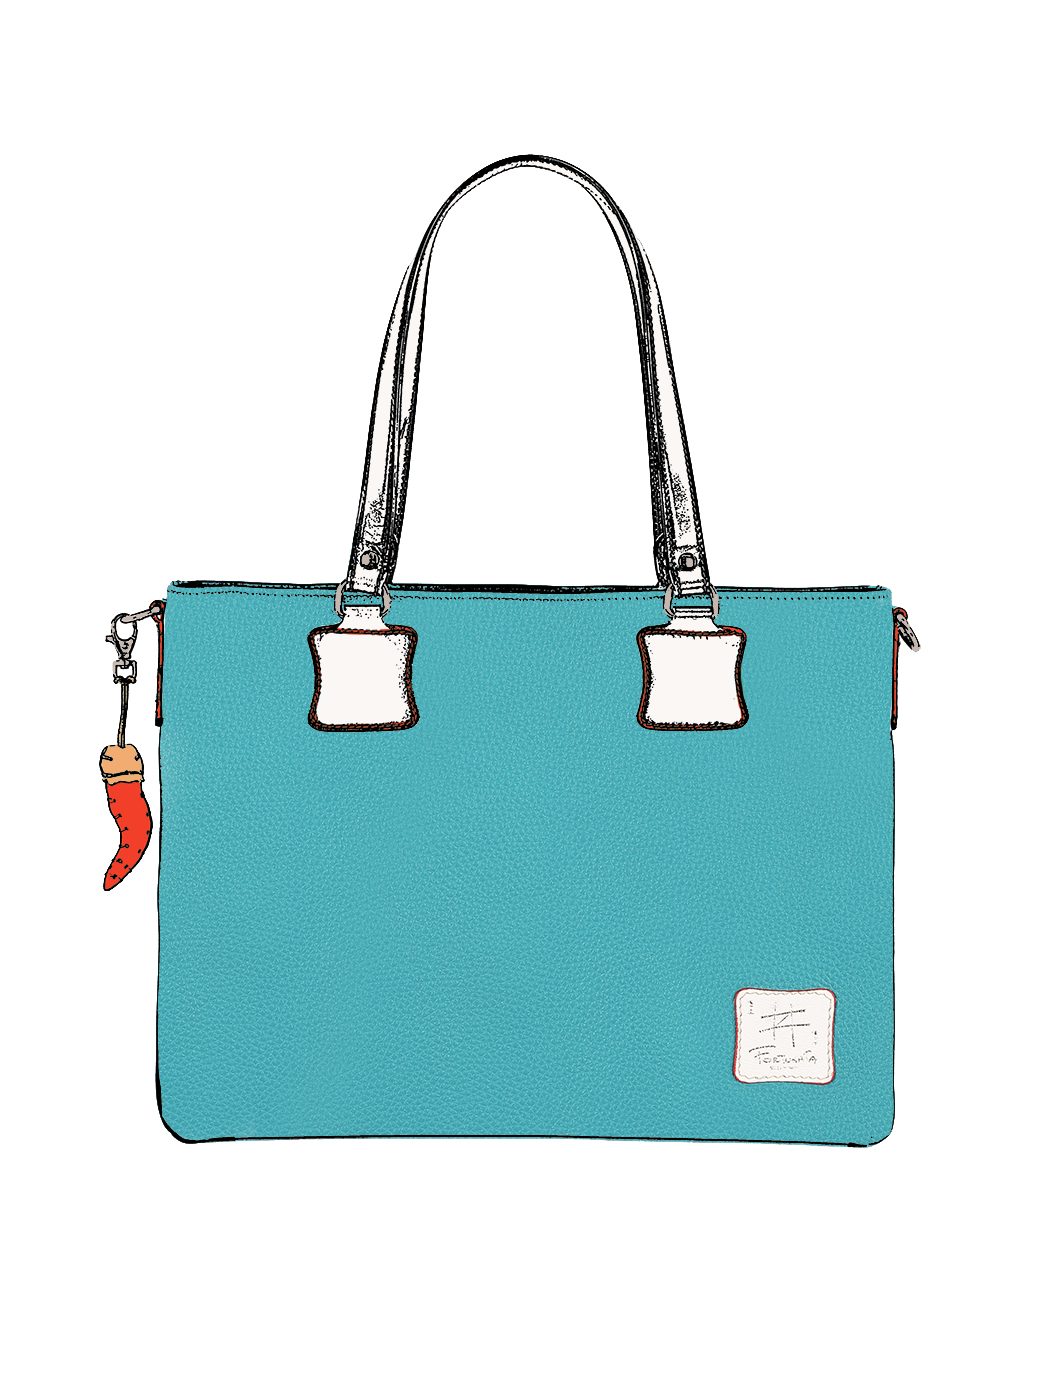 Дизайнерская сумка – шоппер из коллекции Fortunata светло - голубого цвета